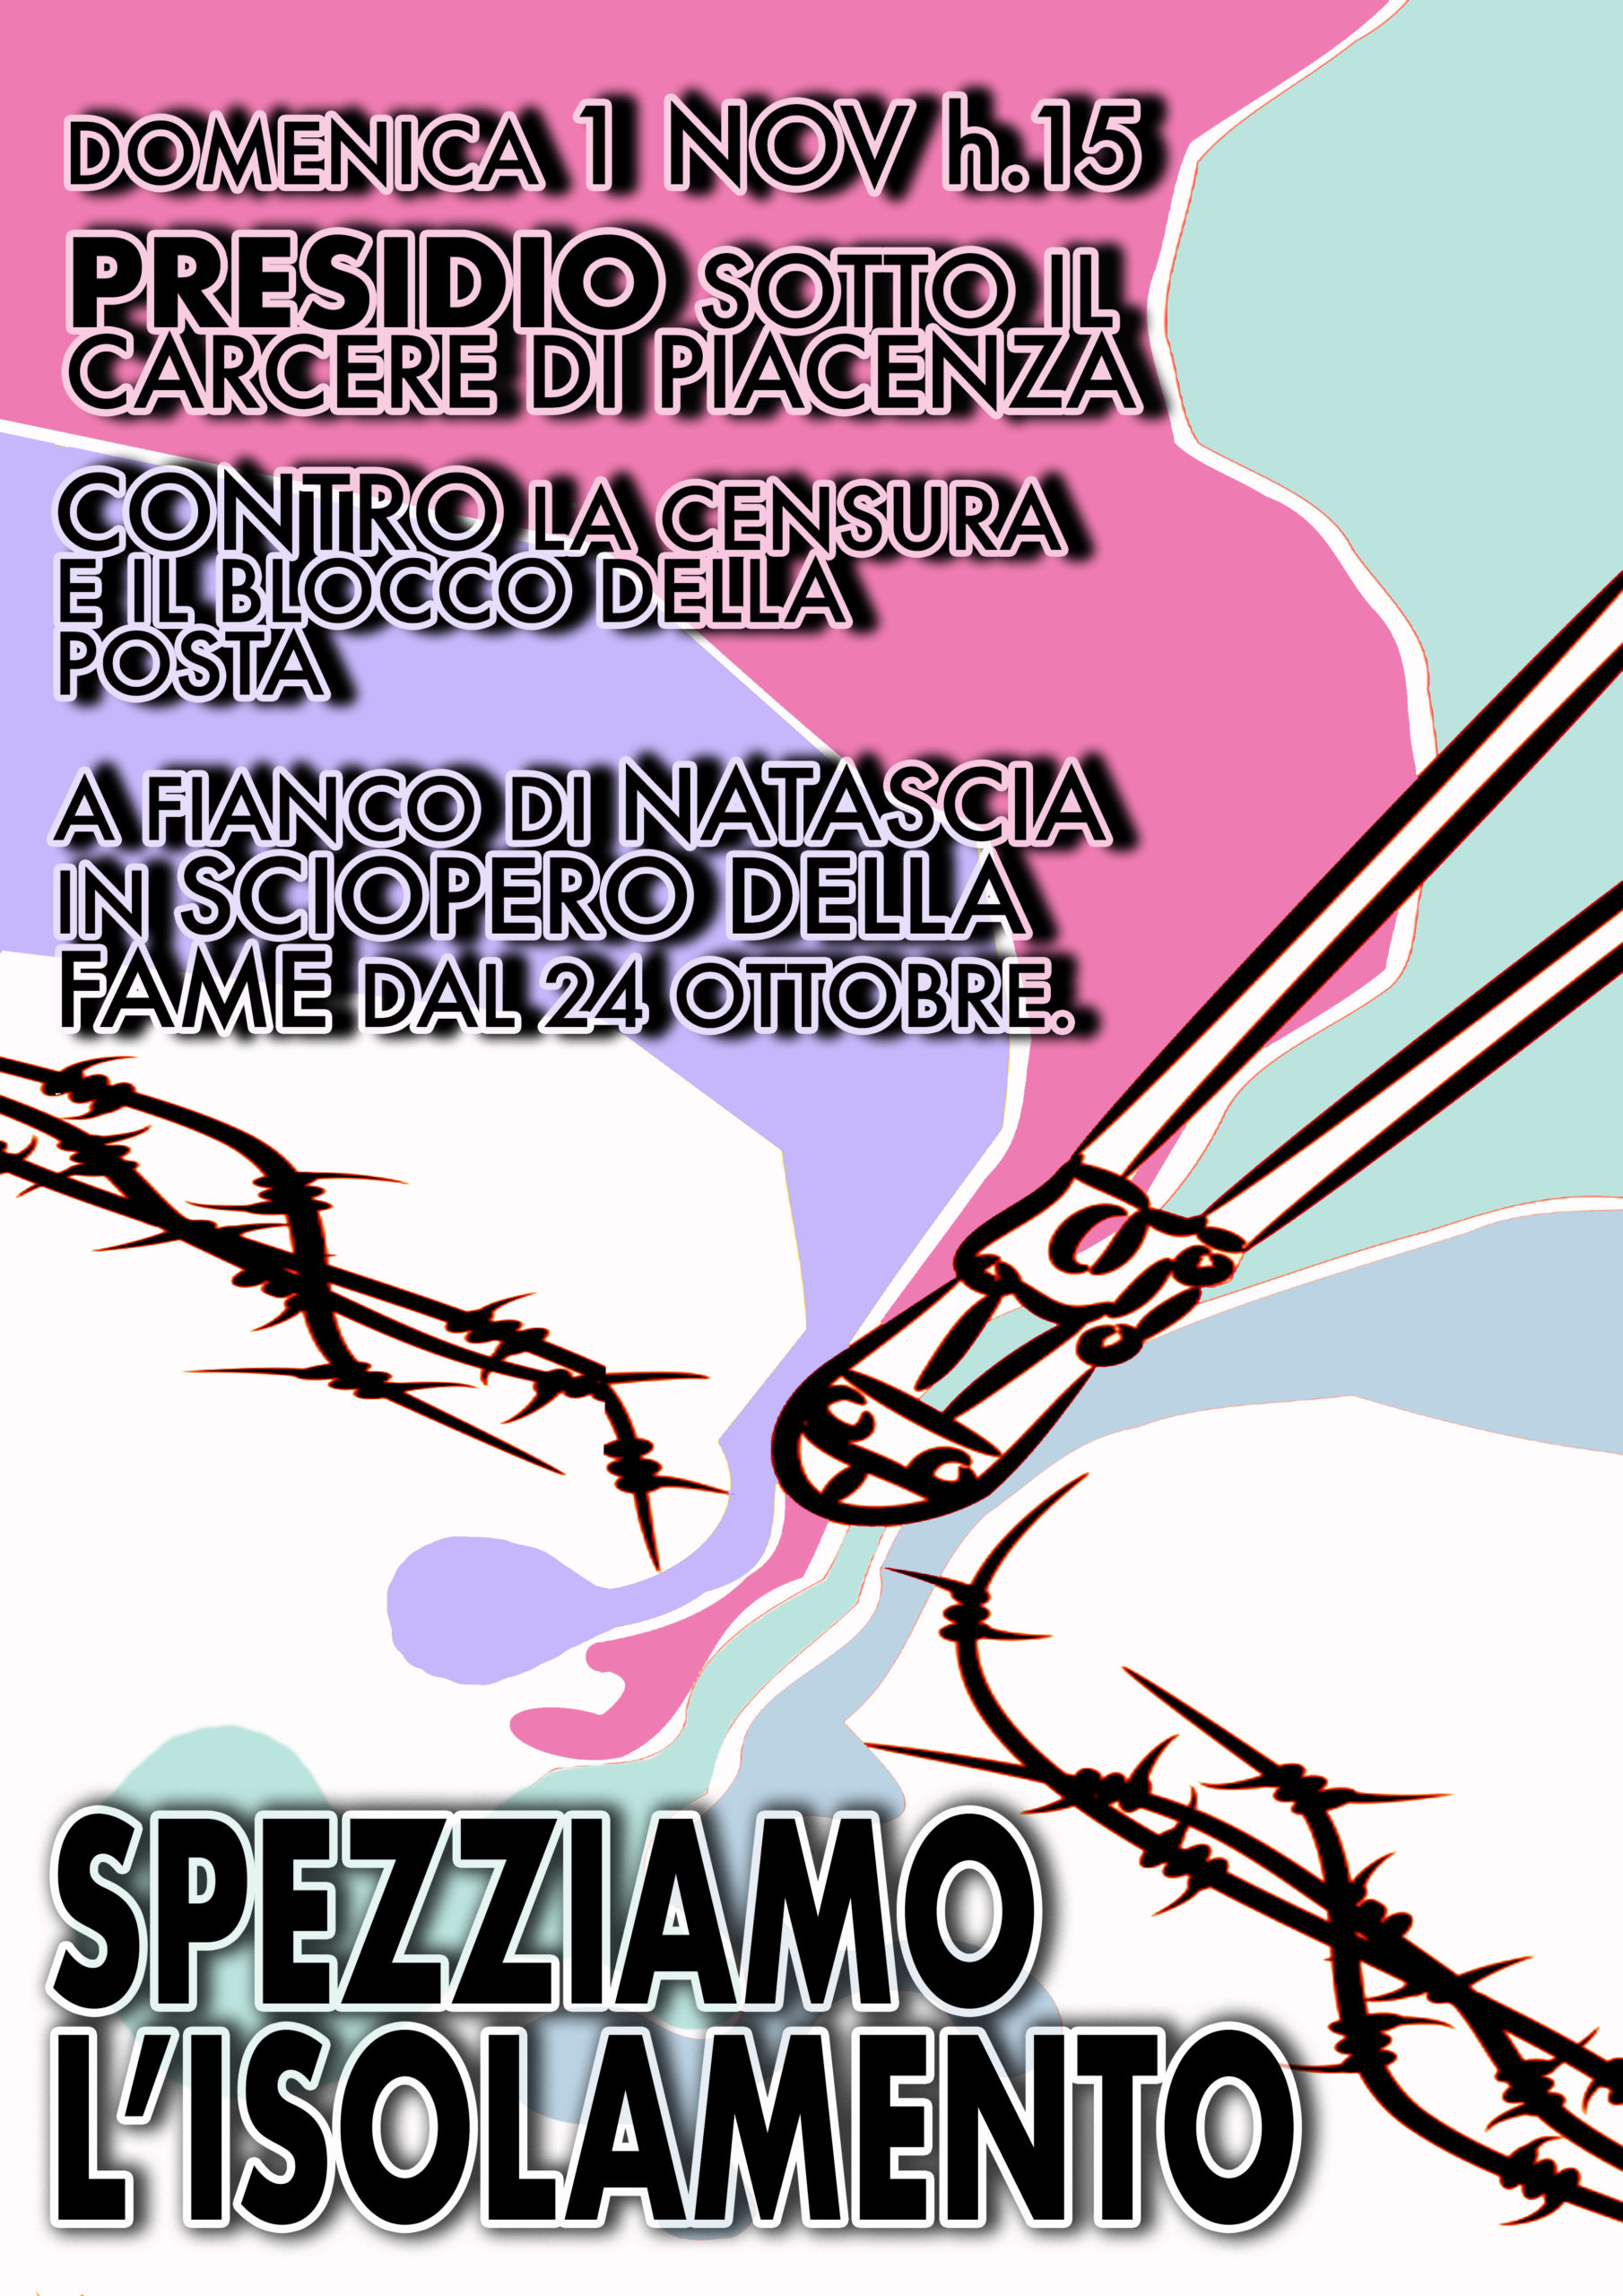 Piacenza: Presidio a fianco di Natascia in sciopero della fame